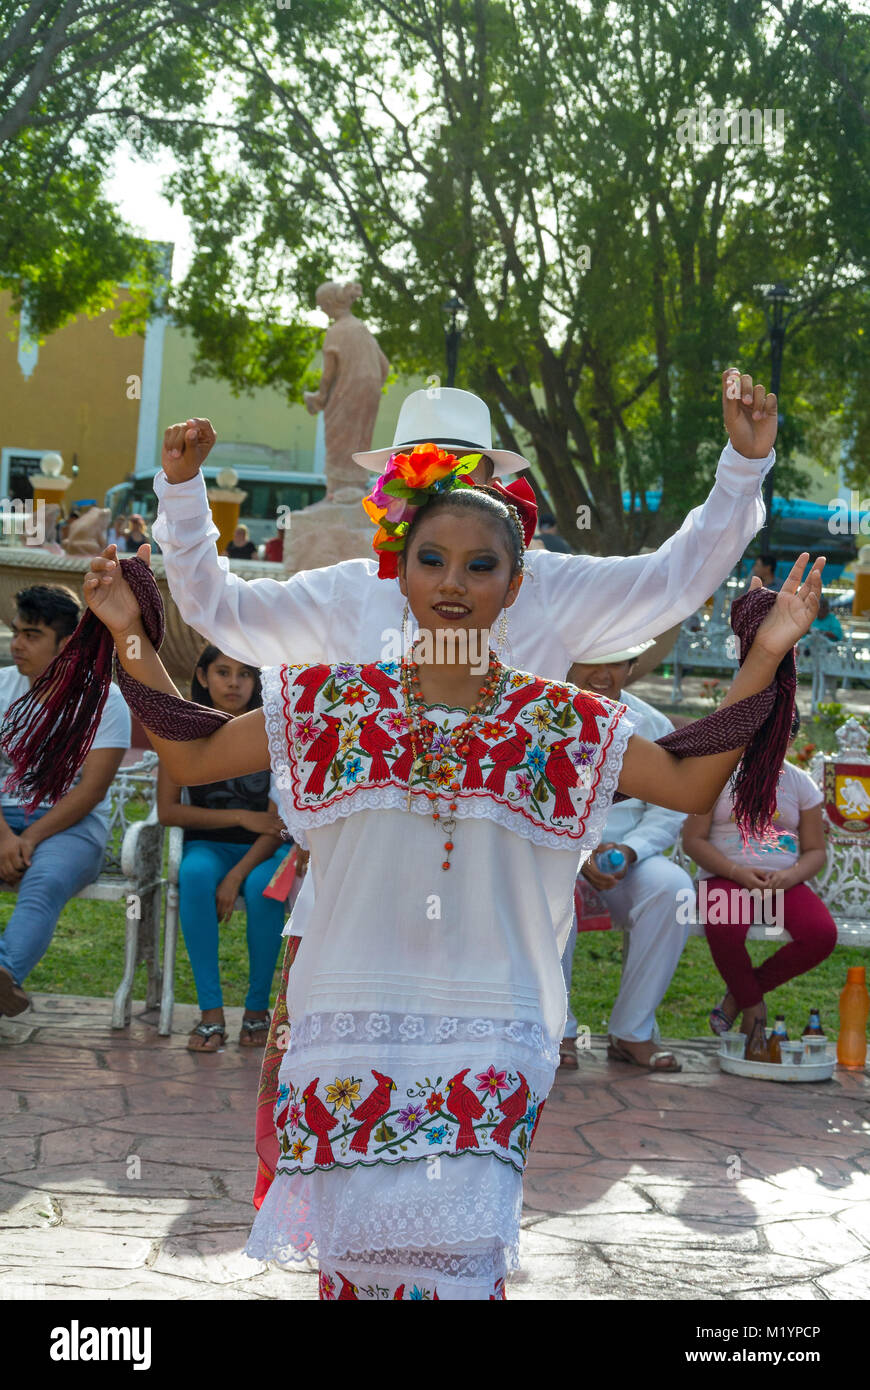 Valladolid, Yucatan, Mexique, danseurs mexicains au Parque principal Francisco Cantón Rosado qui est un parc principal de Valladolid Banque D'Images